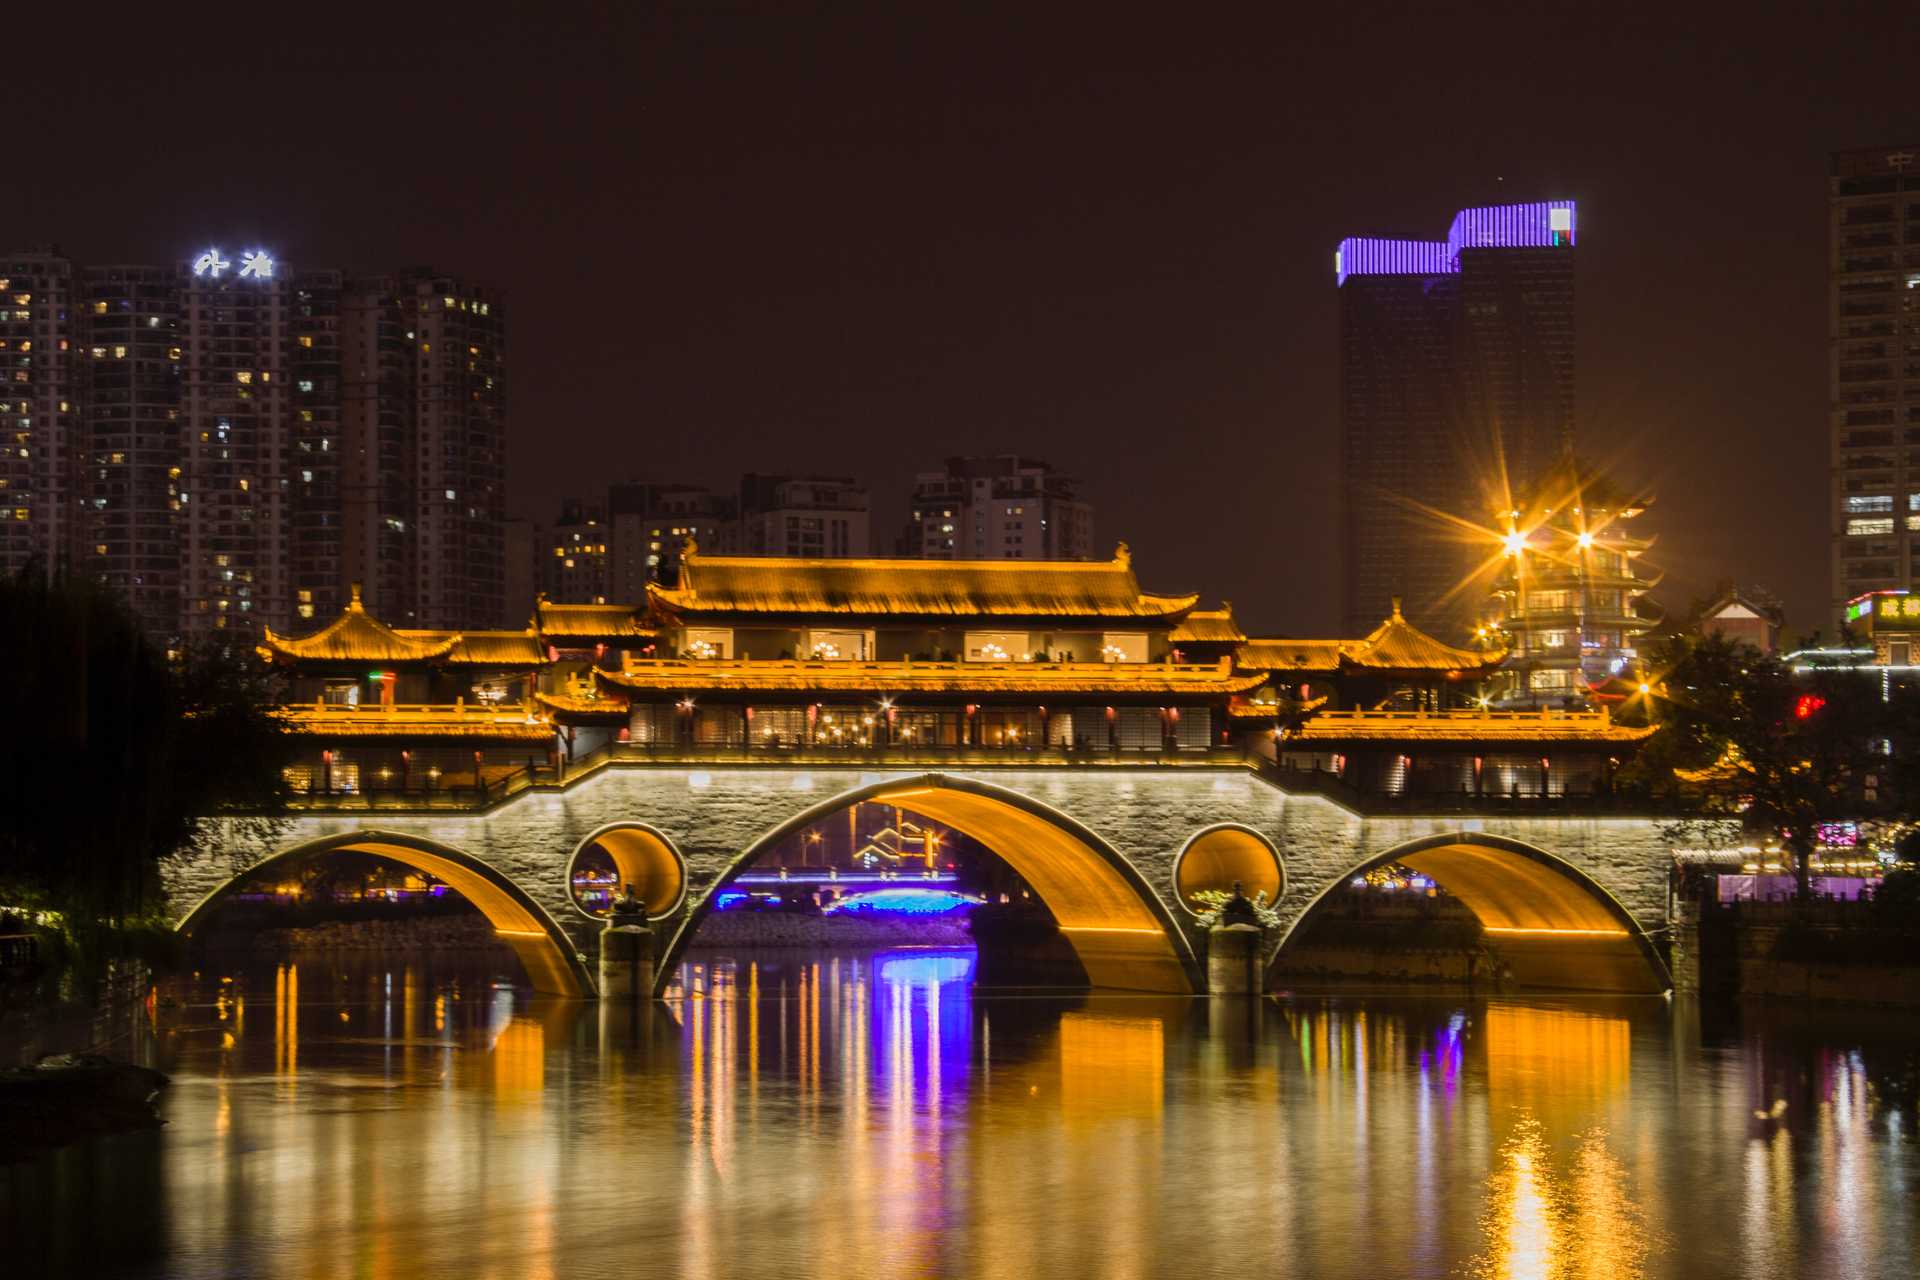 Night view of an illuminated historical bridge in Chengdu.